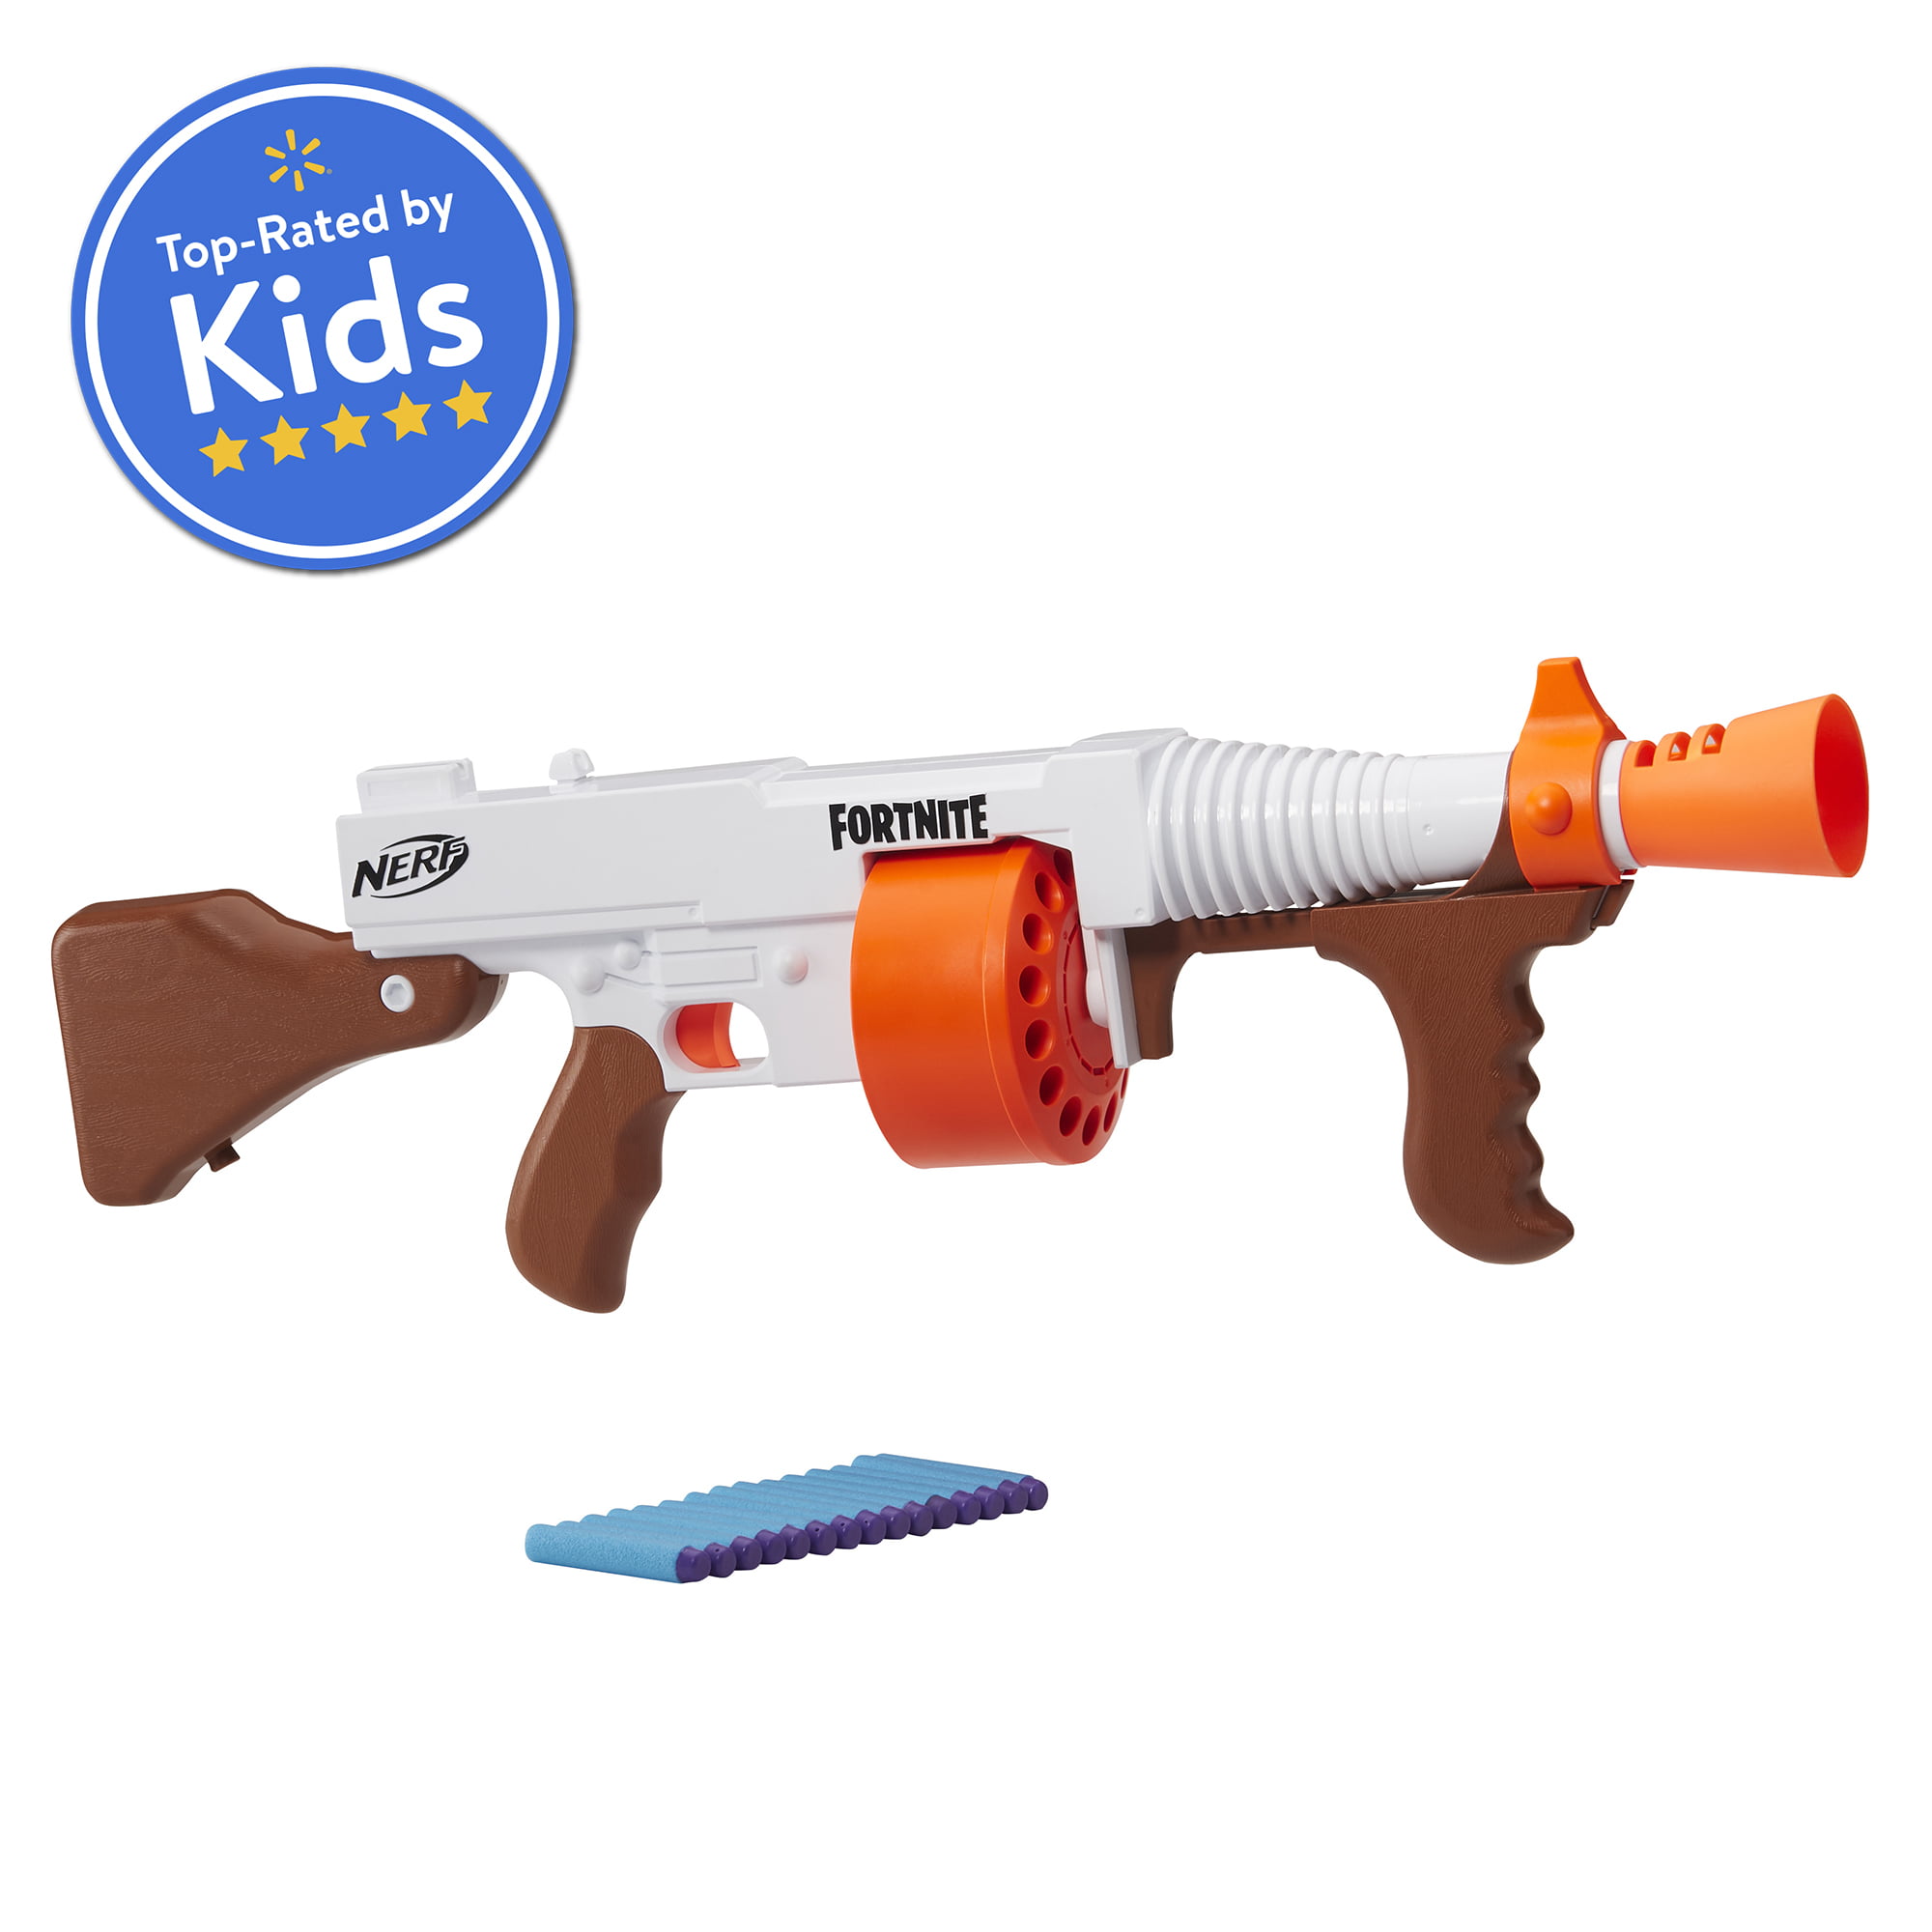 Nerf Fortnite Sp-rippley Elite Dart Blaster Toy for Children Pistol 8 Years Old for sale online 